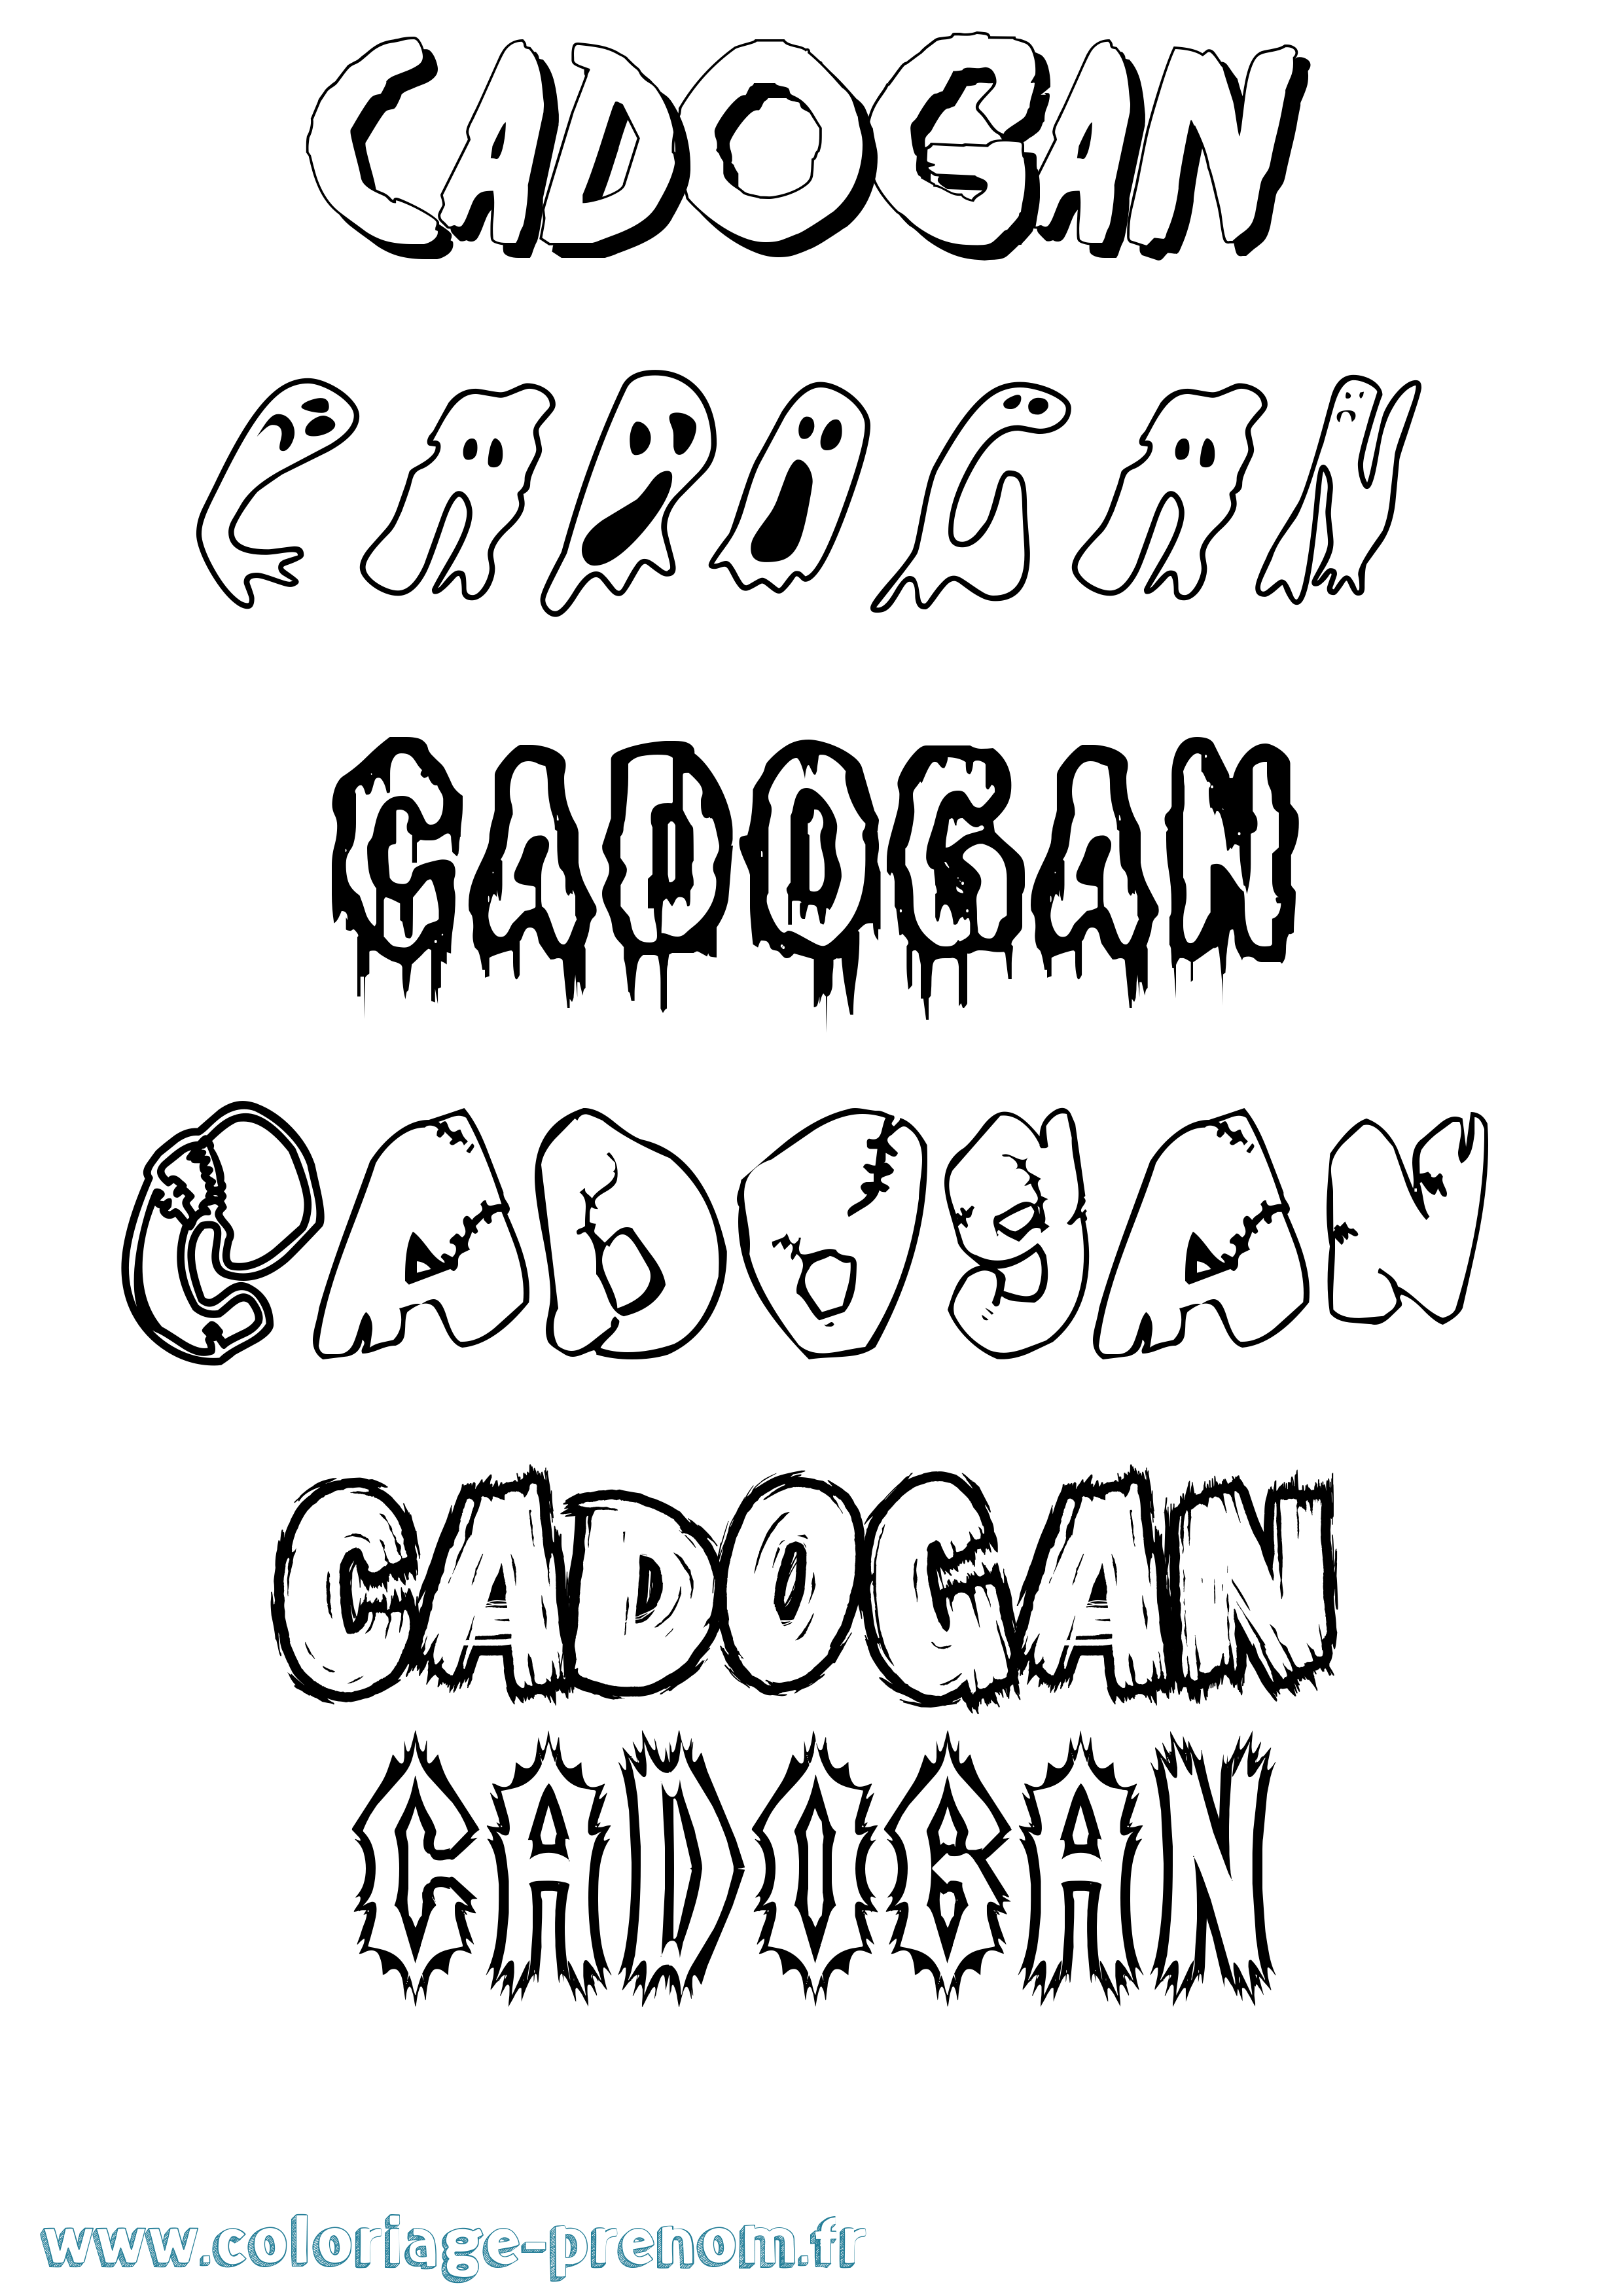 Coloriage prénom Cadogan Frisson